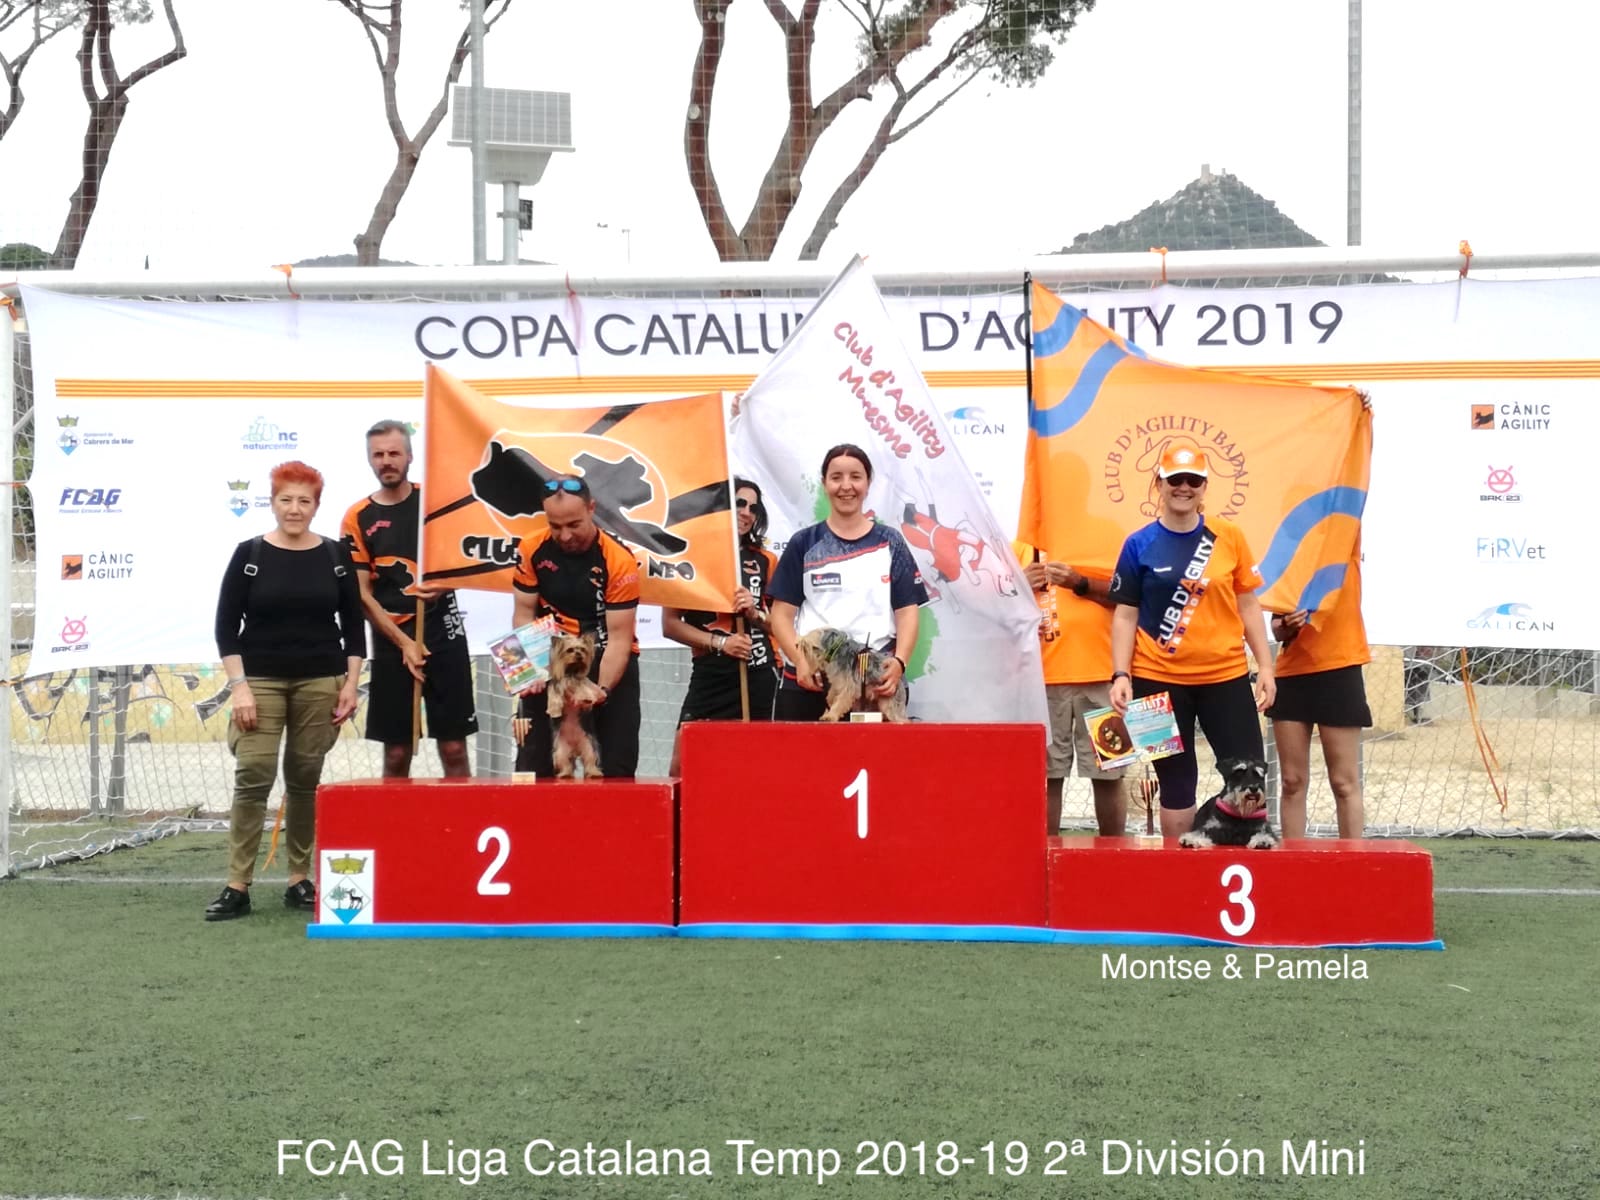 FCAG Liga Catalana Temp 2018-19 - 2ª División mini